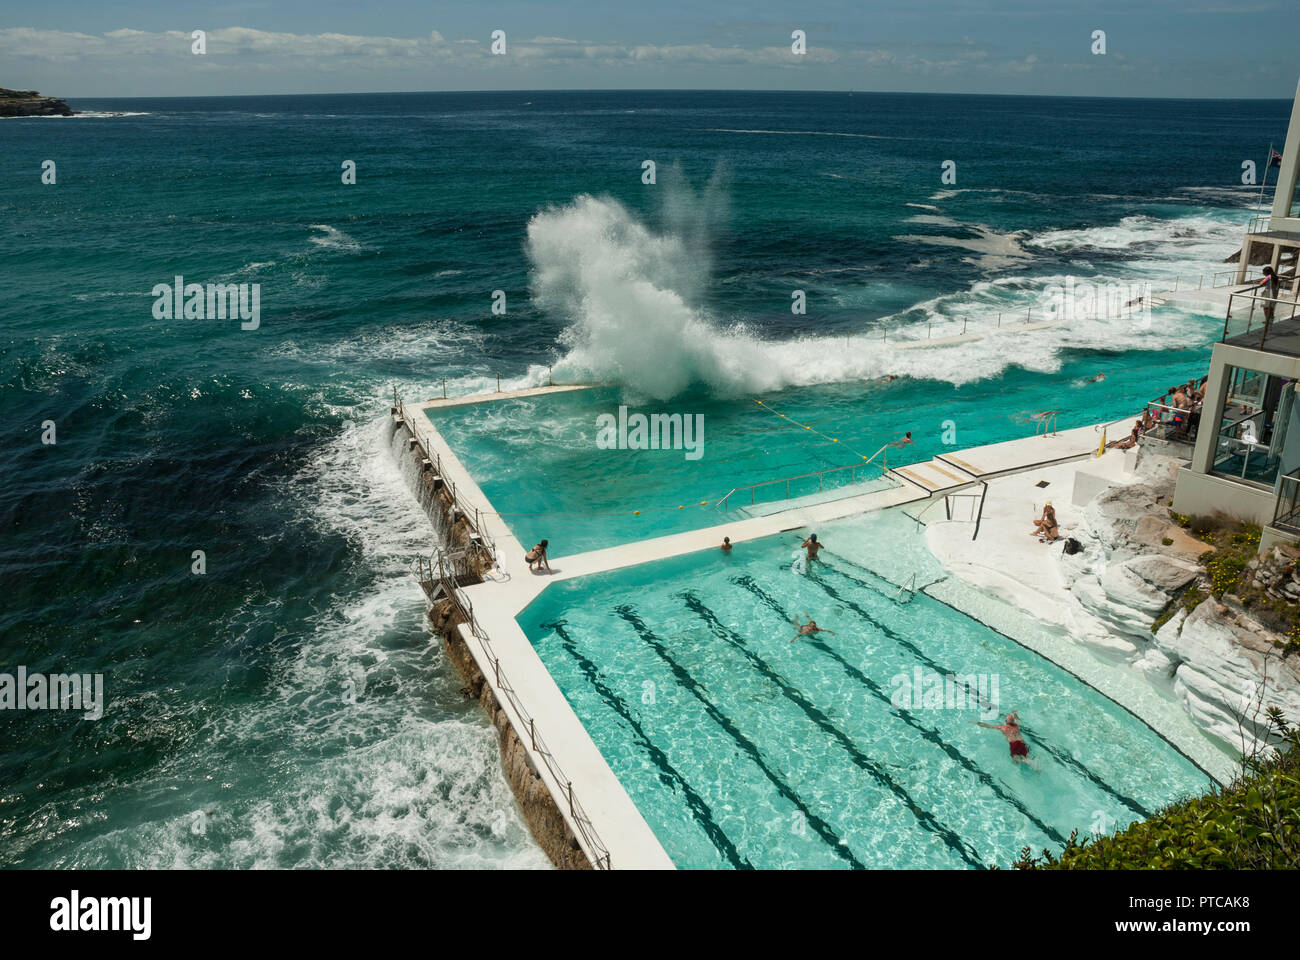 Riesige Wellen über Bondi Iceberg Meerwasser Außenpools (Sydney). Sonnenschein und attraktive Blau Grün Pools mit einige Leute schwimmen. Stockfoto